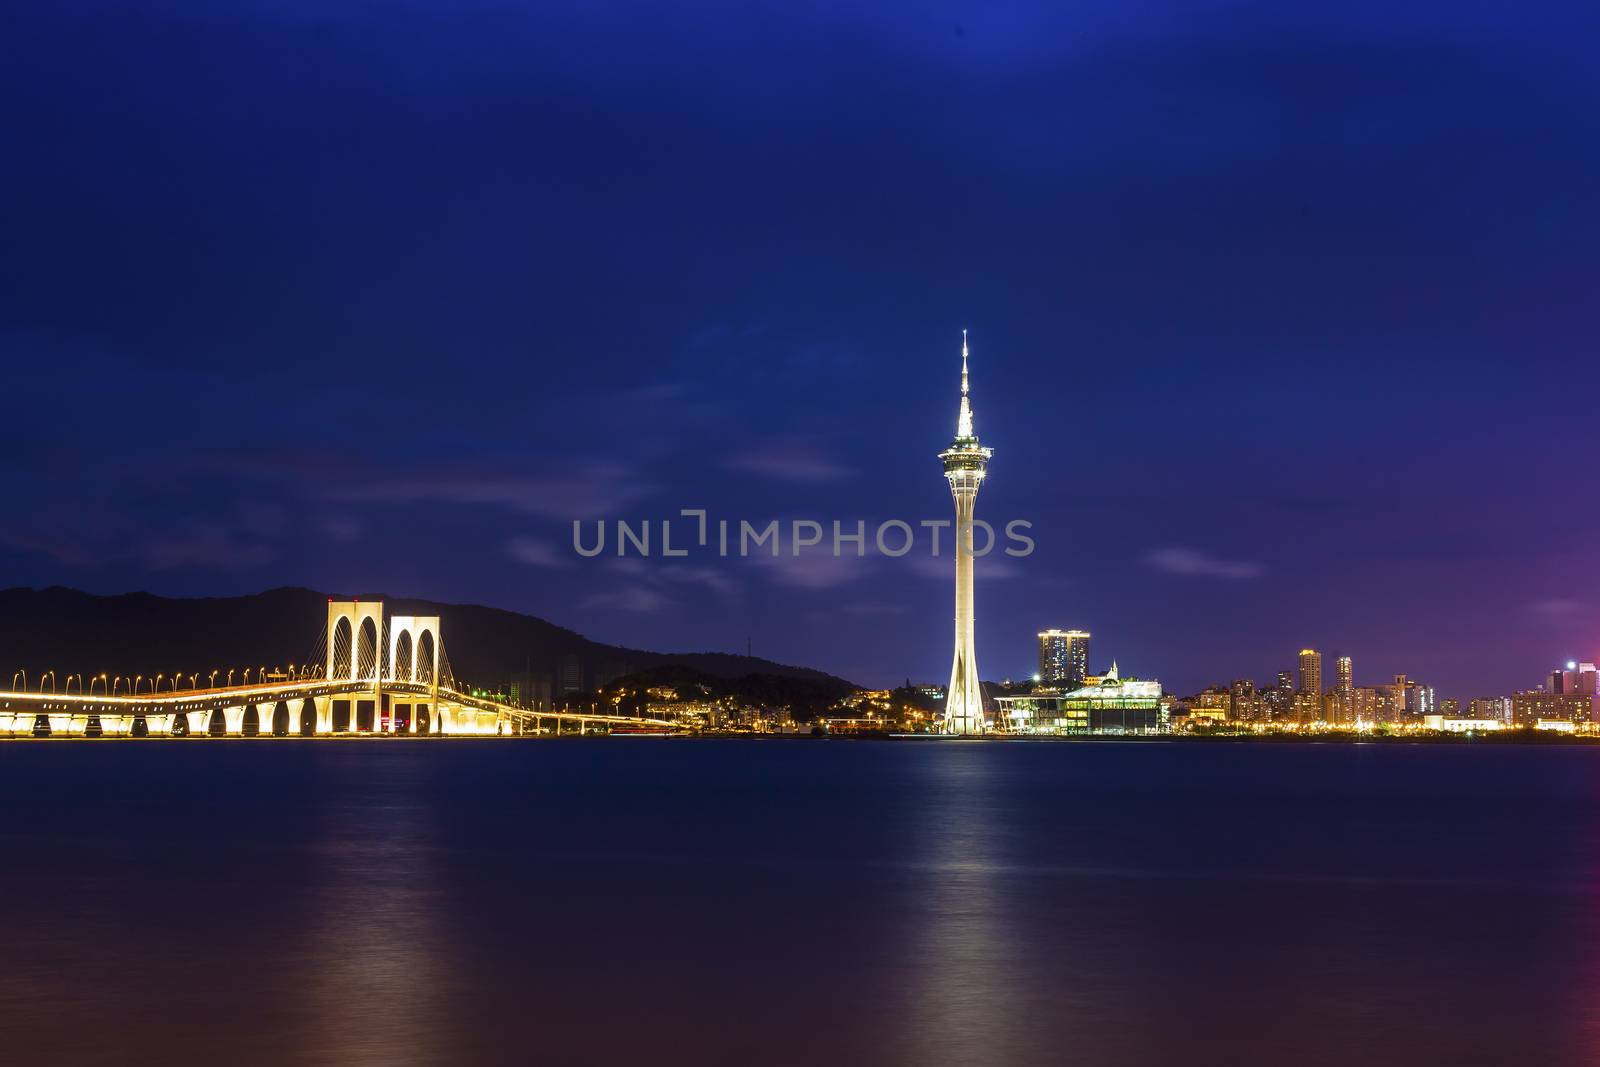 Macau tower at night by kawing921